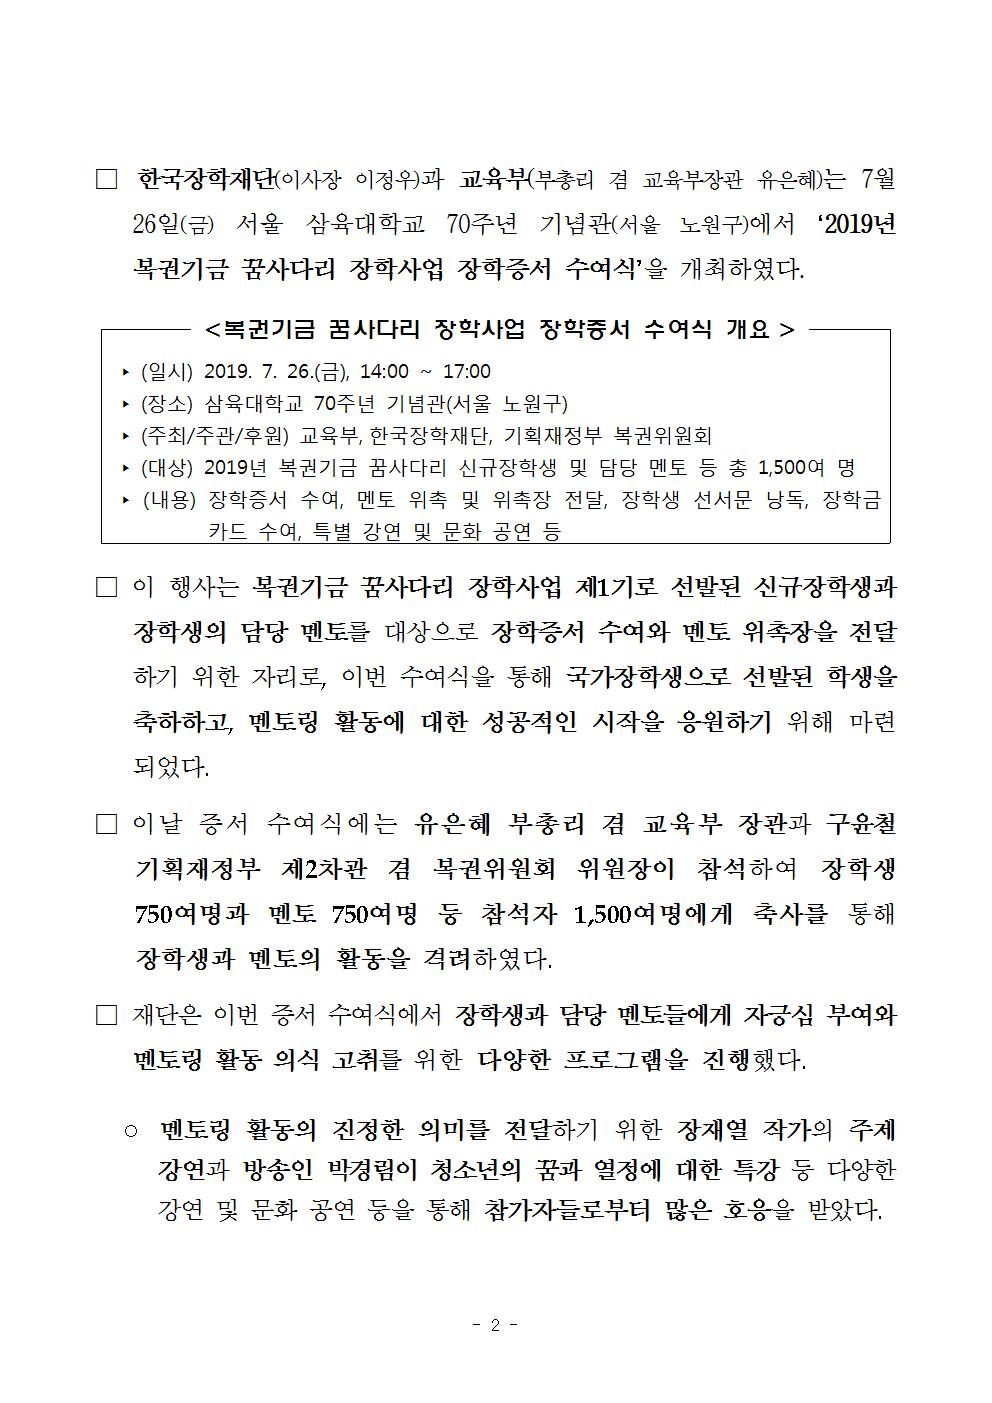 07-26(금)[보도자료] 복권기금 꿈사다리 장학사업 장학증서 수여식 개최002.jpg